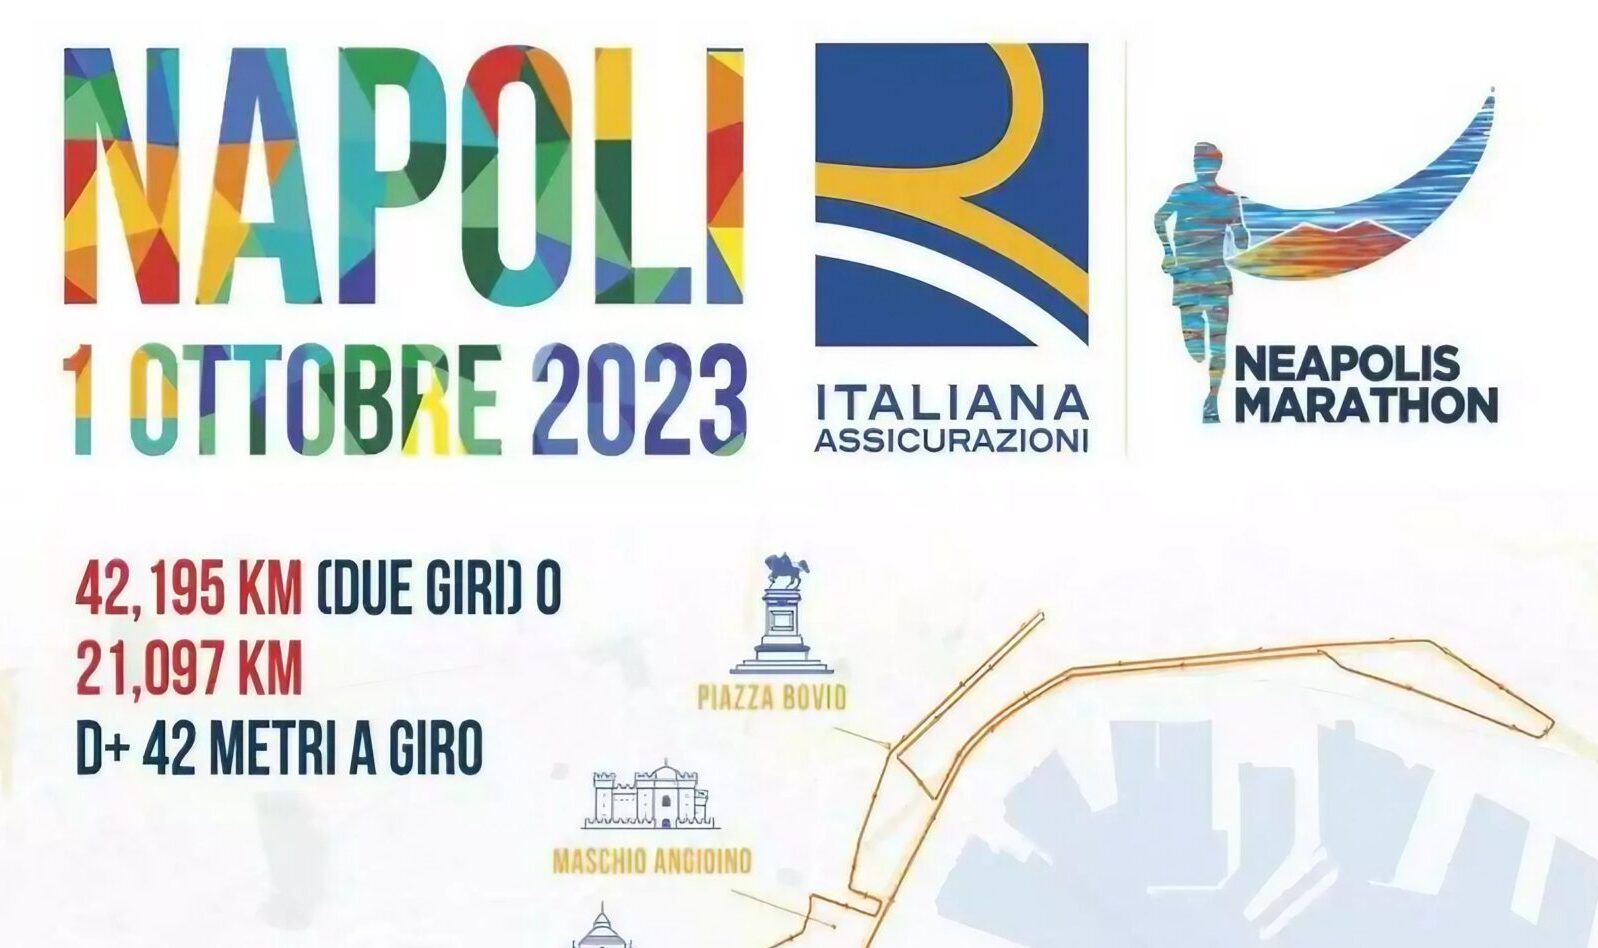 Плакат Неаполитанского марафона 2023 года